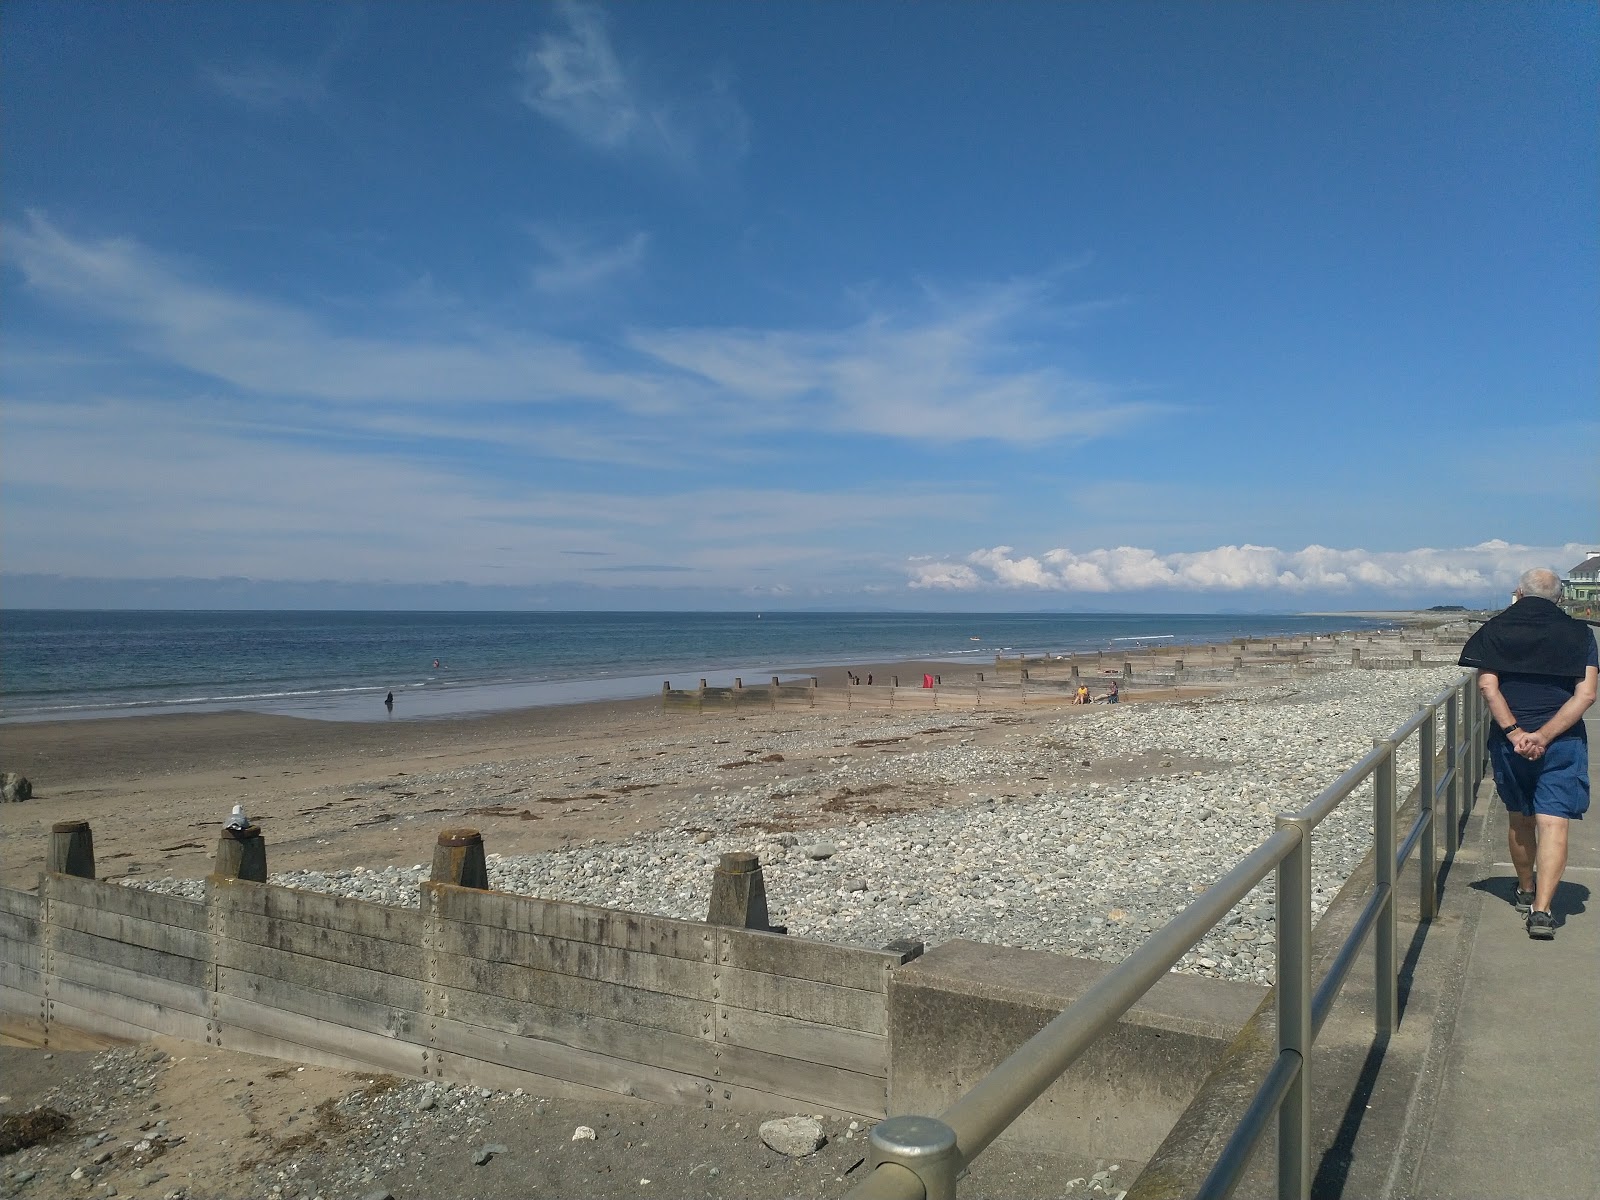 Tywyn beach'in fotoğrafı kısmen temiz temizlik seviyesi ile